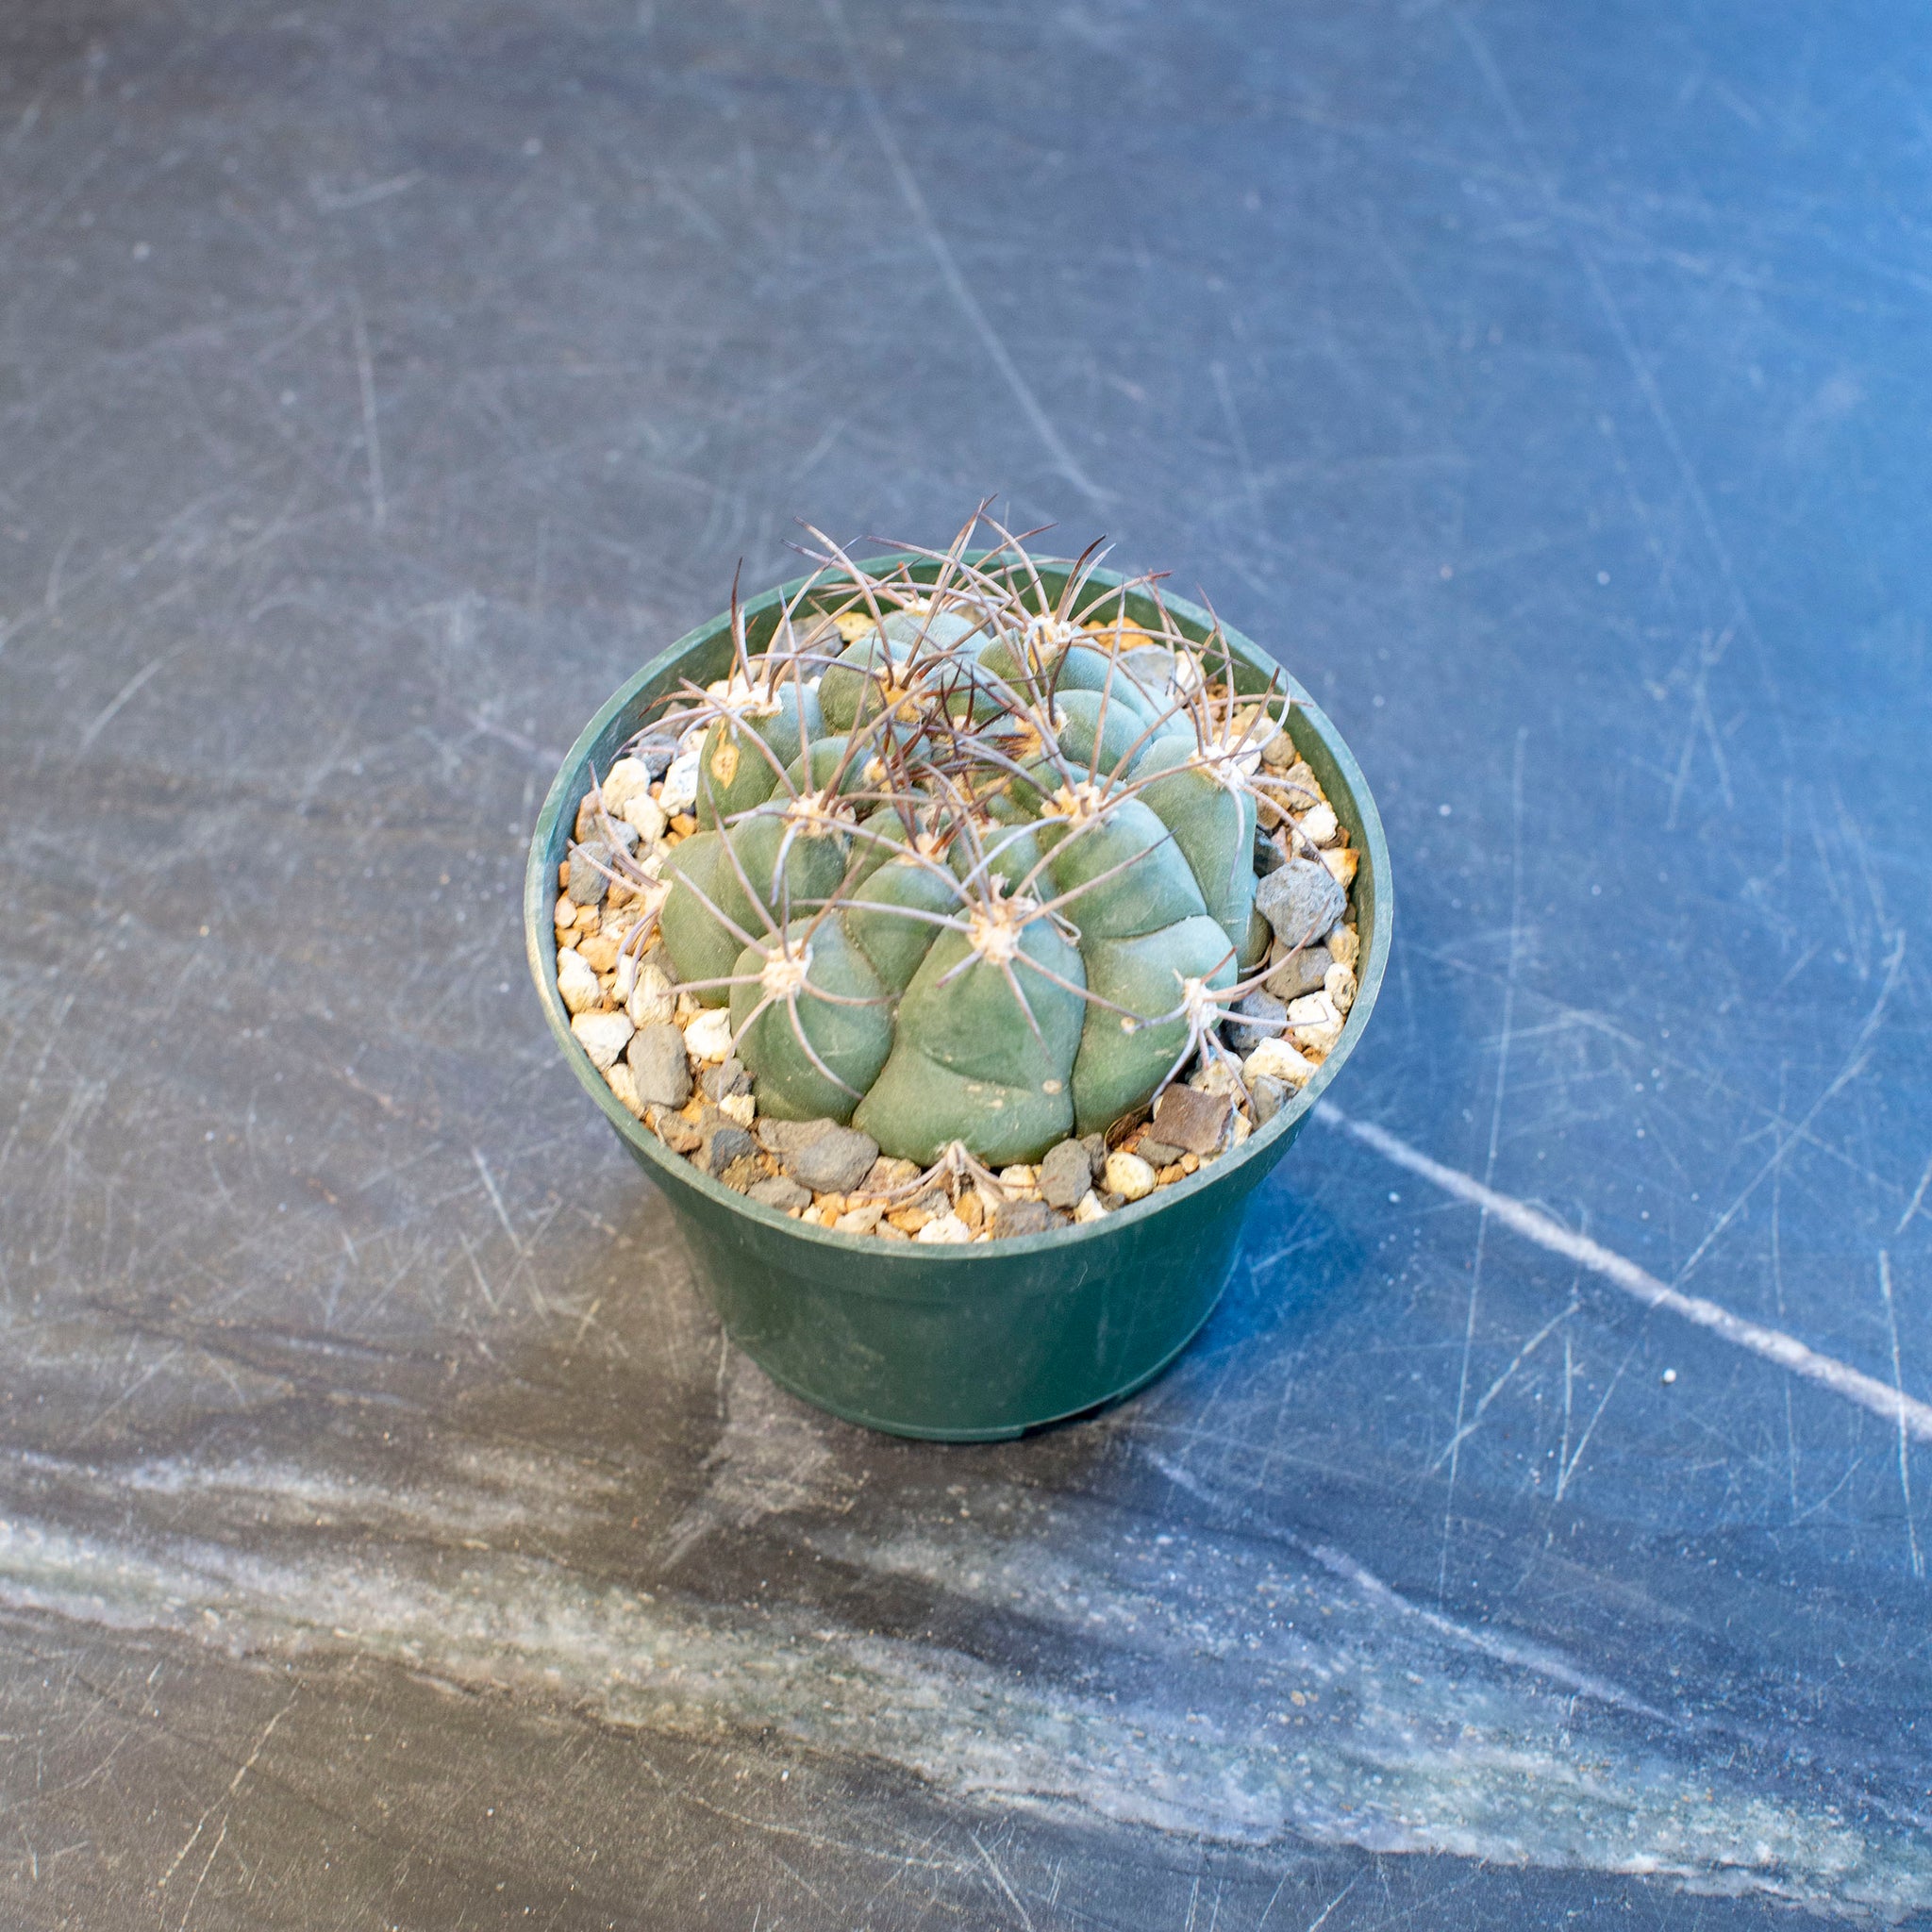 Gymnocalycium saglionis (Giant Chin Cactus)